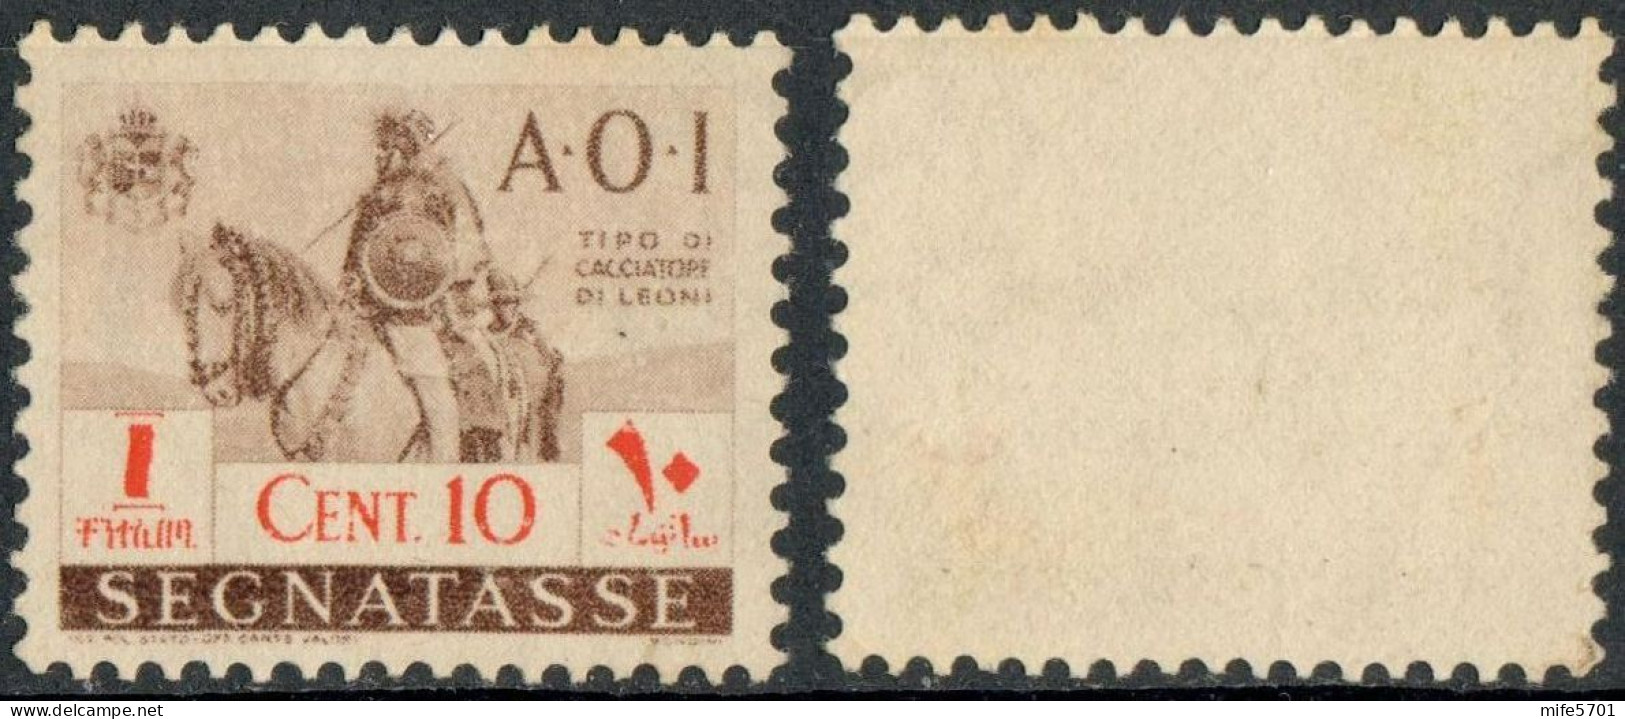 REGNO AFRICA ORIENTALE ITALIANA 1941 A.O.I. SEGNATASSE 'CACCIATORE DI LEONI A CAVALLO' C. 10 SENZA GOMMA (*) SASSONE 11 - Afrique Orientale Italienne